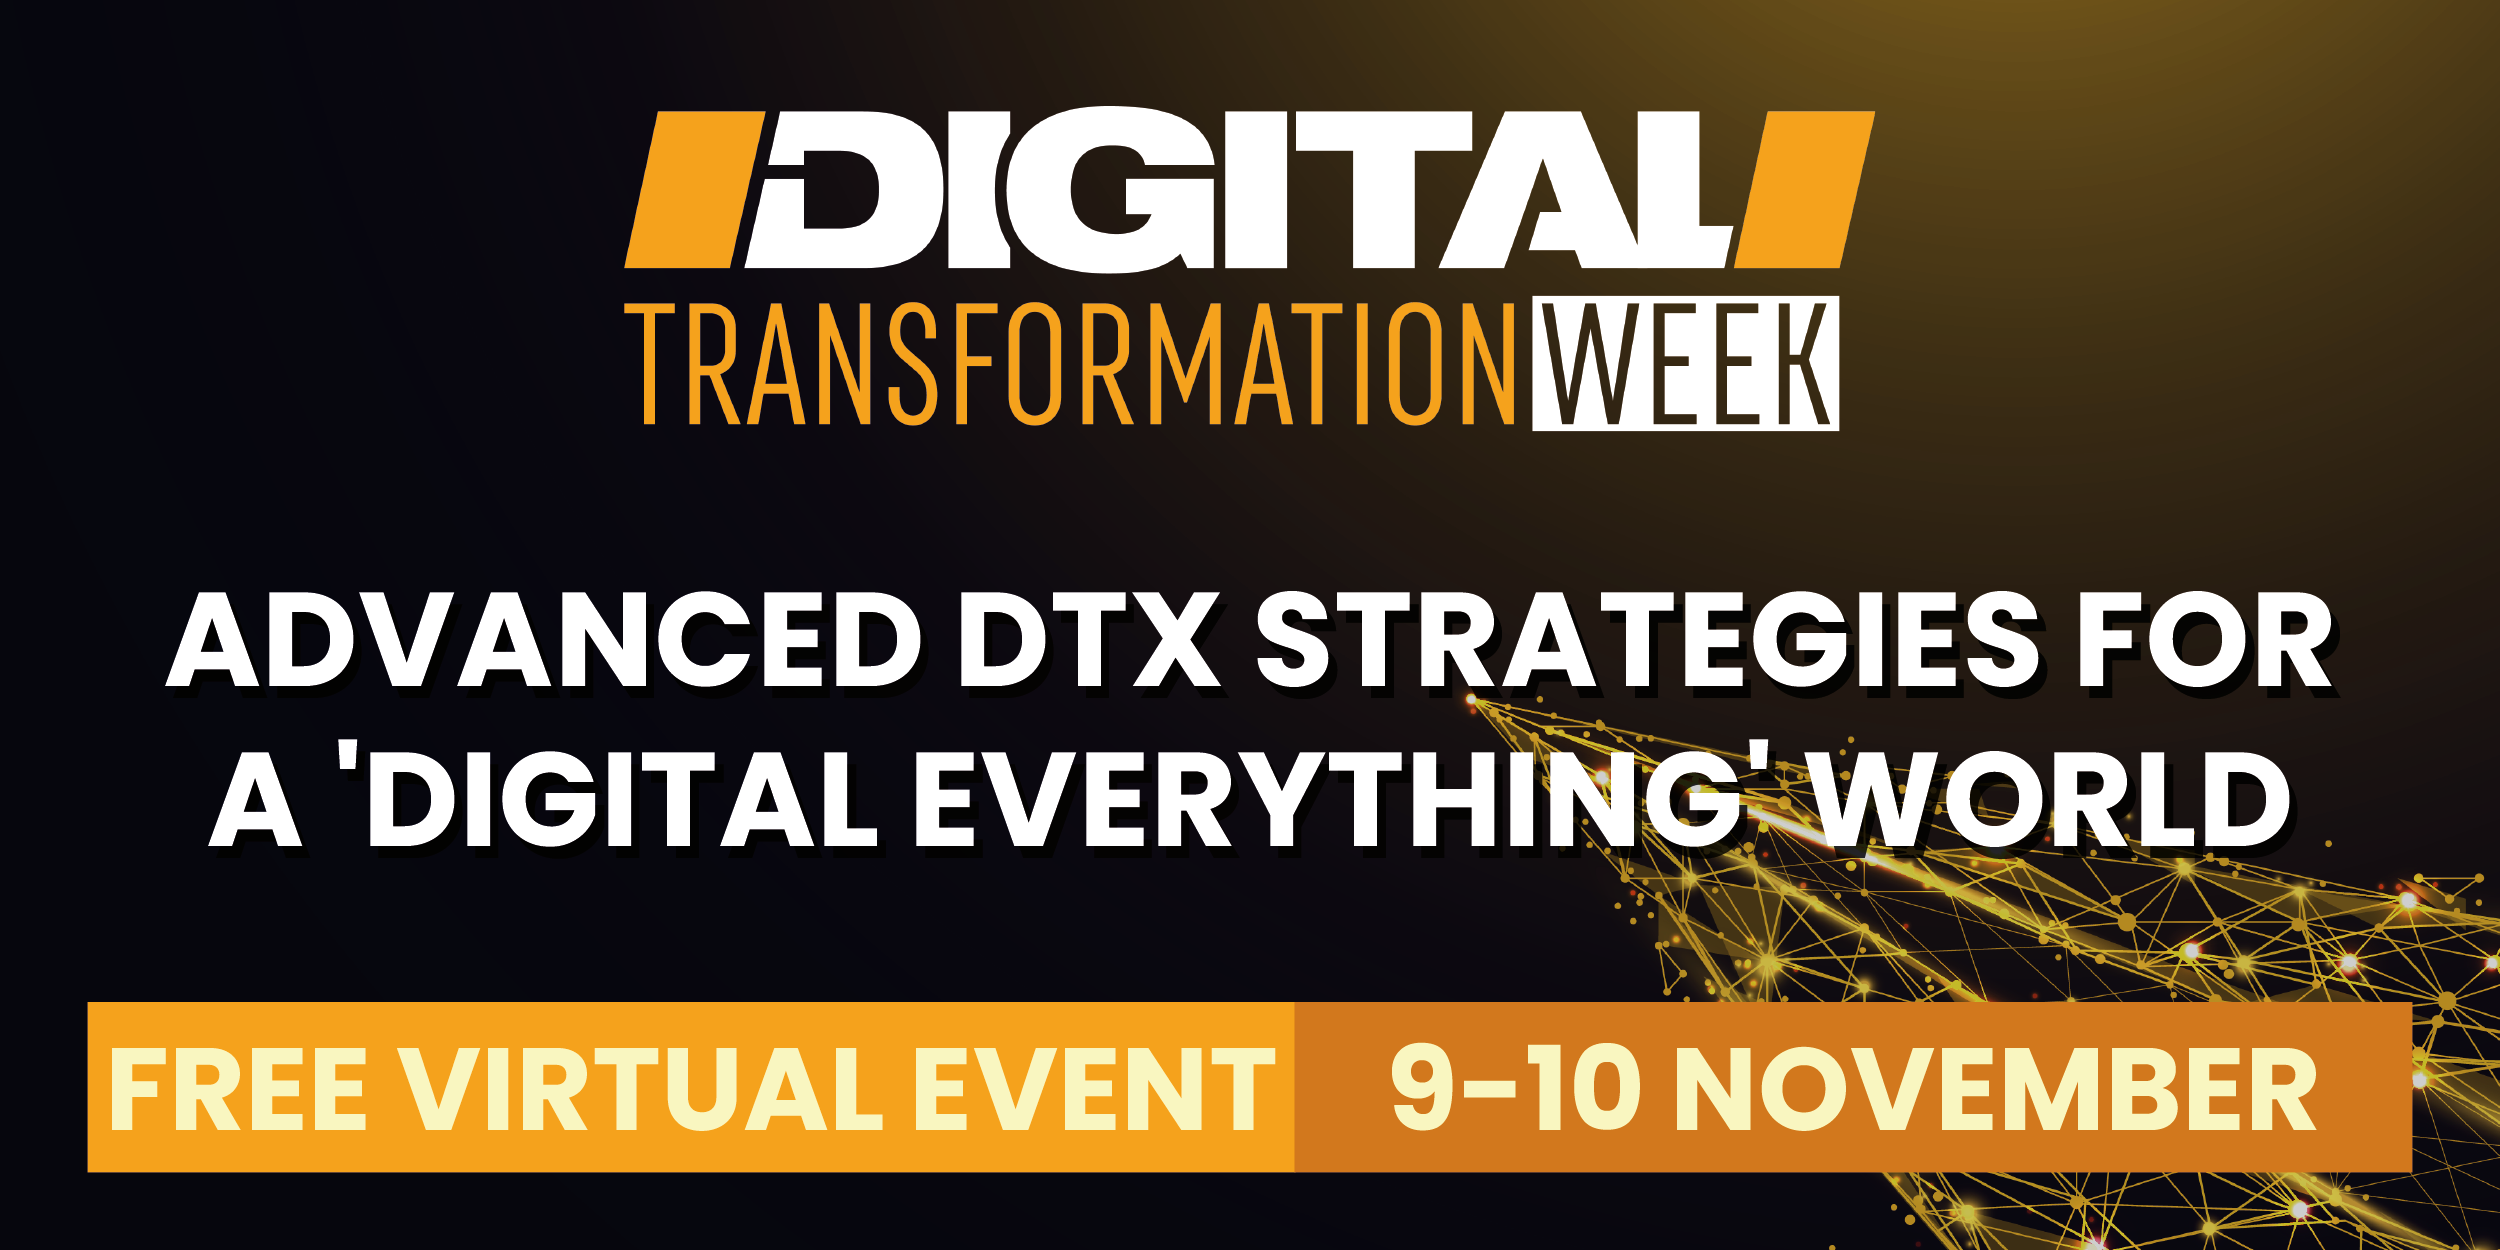 Digital Transformation Week North America organized by Techforge